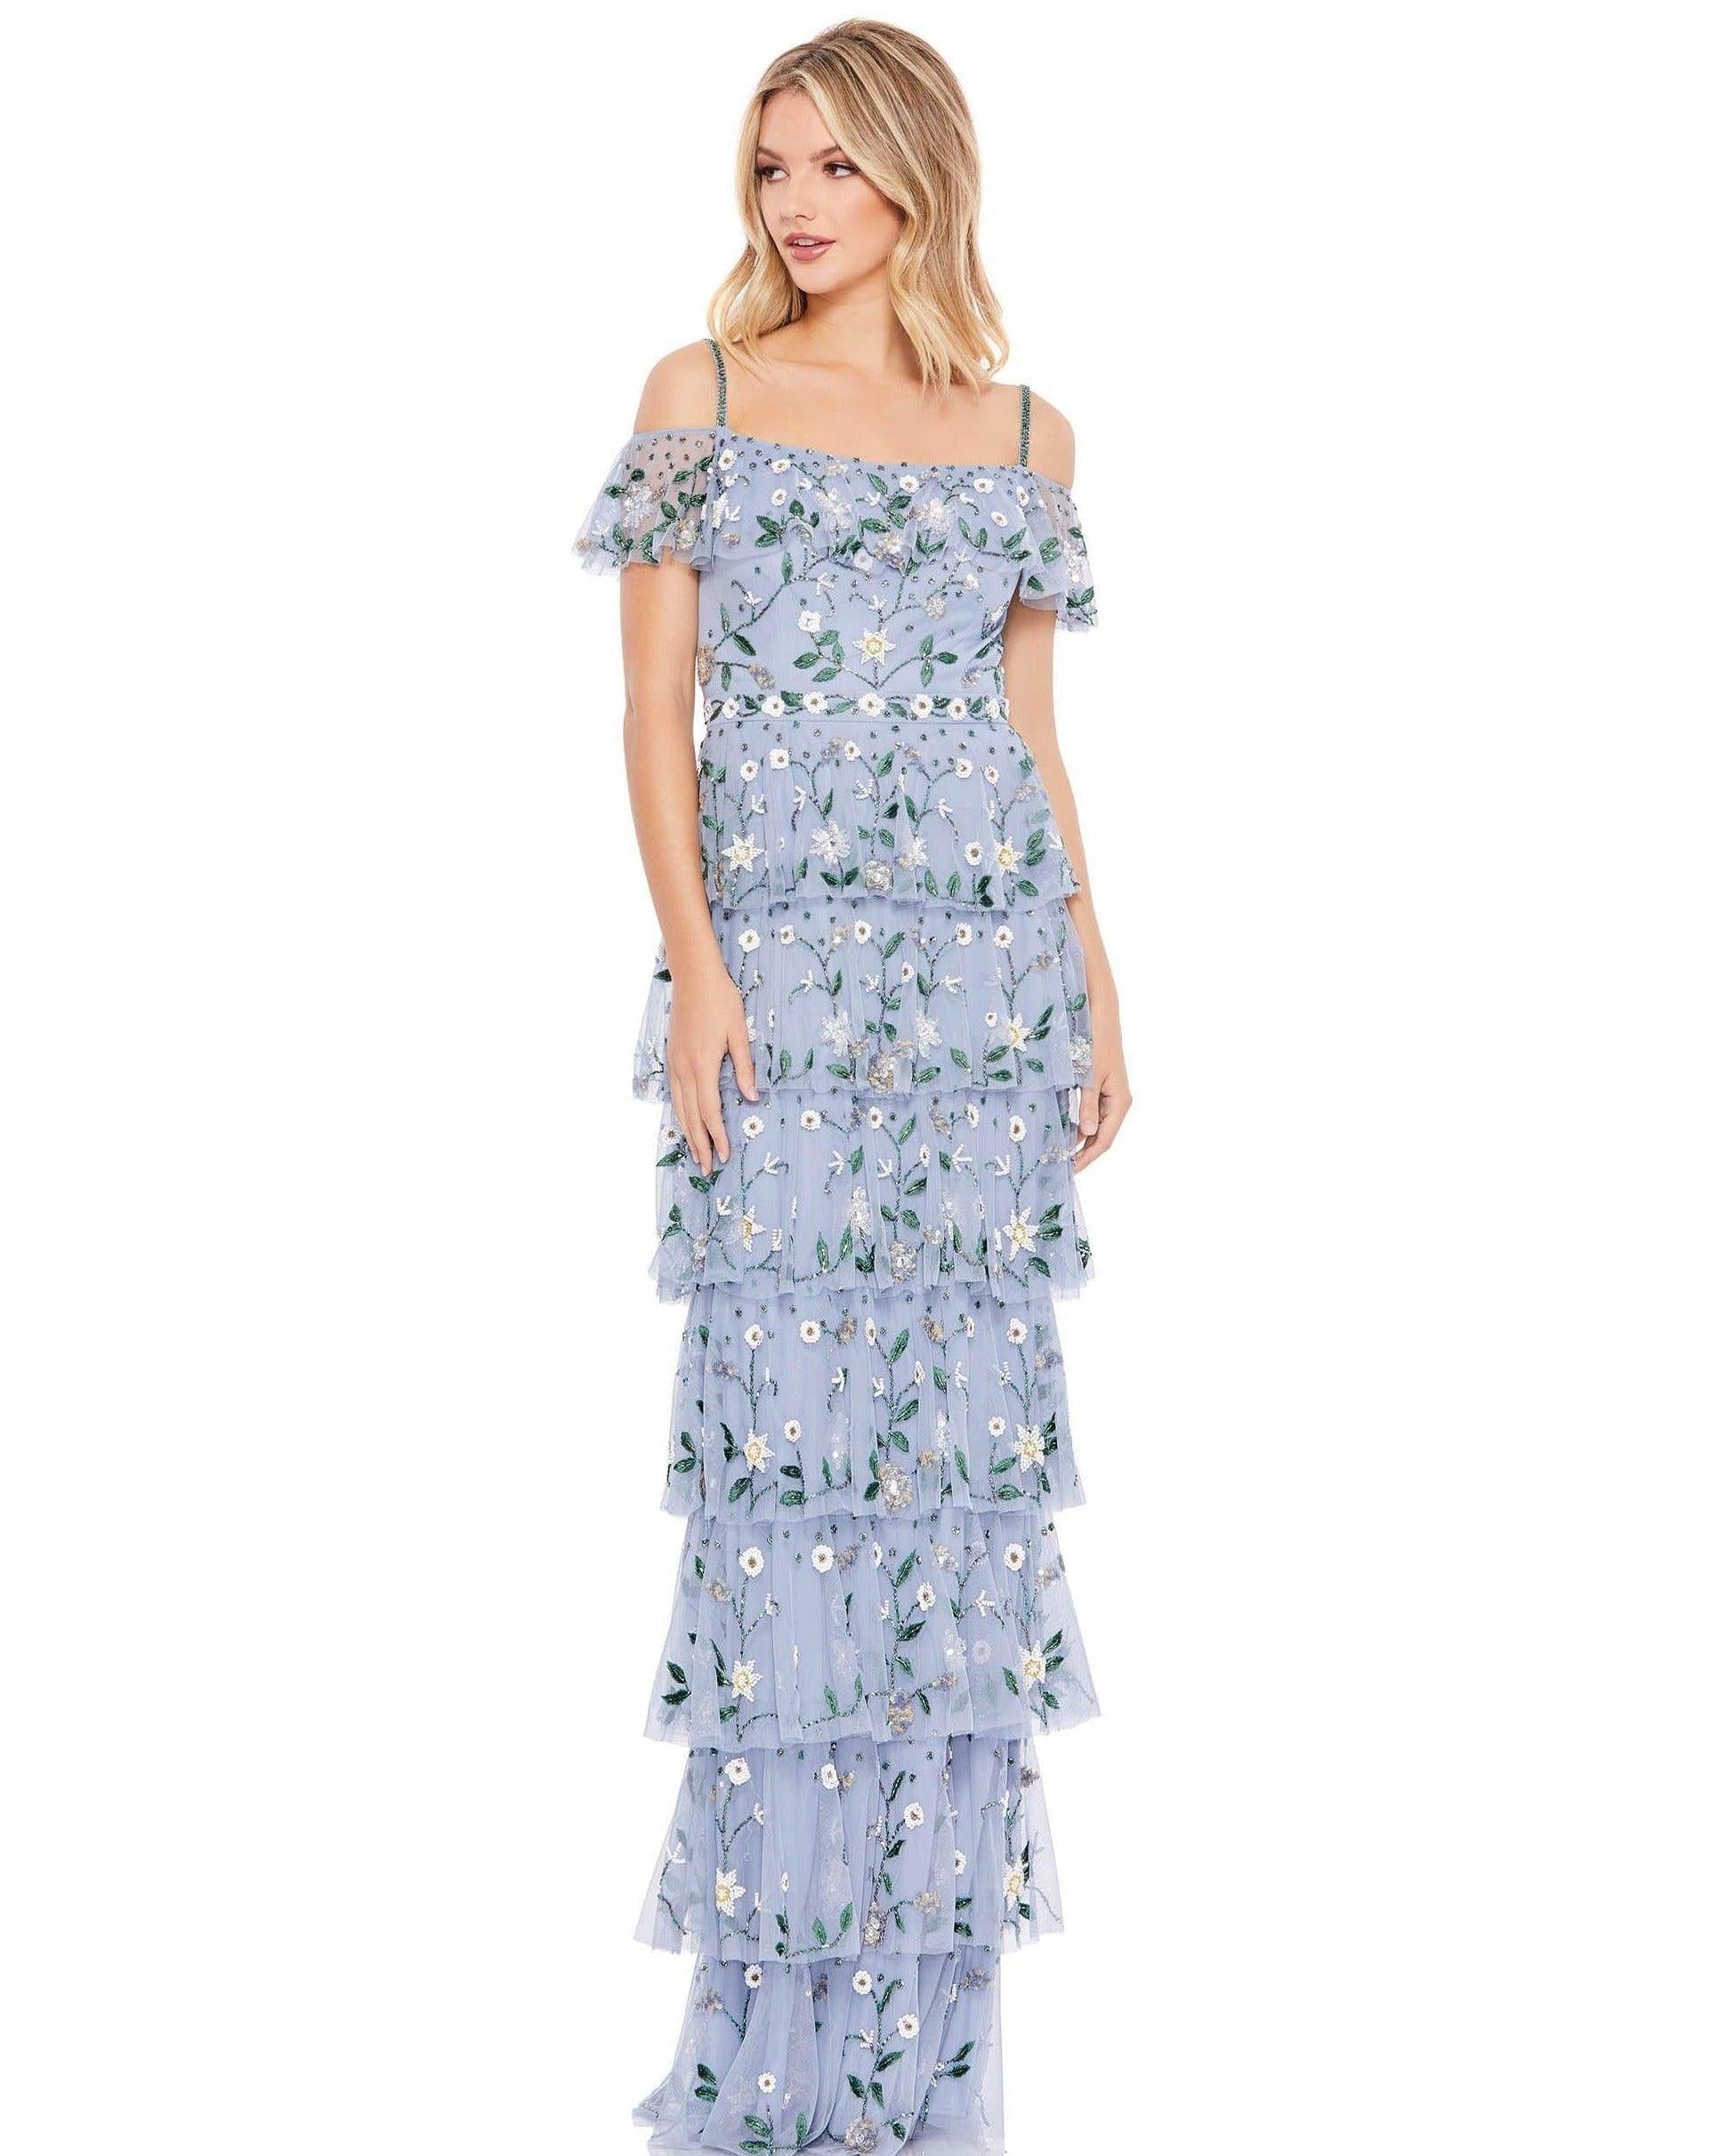 Mac Duggal Long Formal Off Shoulder Dress Sale 9069 - The Dress Outlet